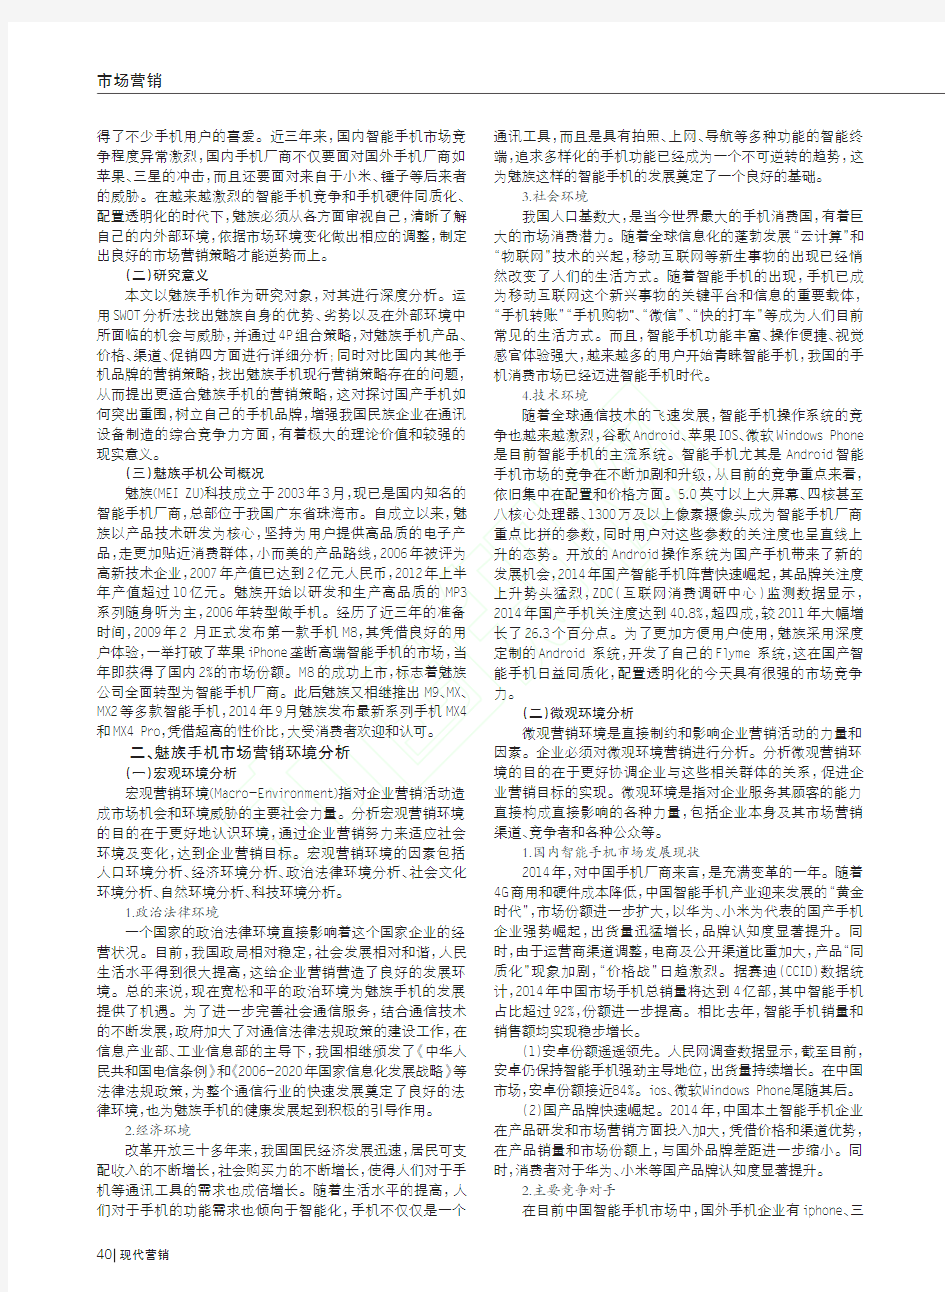 魅族手机市场营销策略分析_刘帅